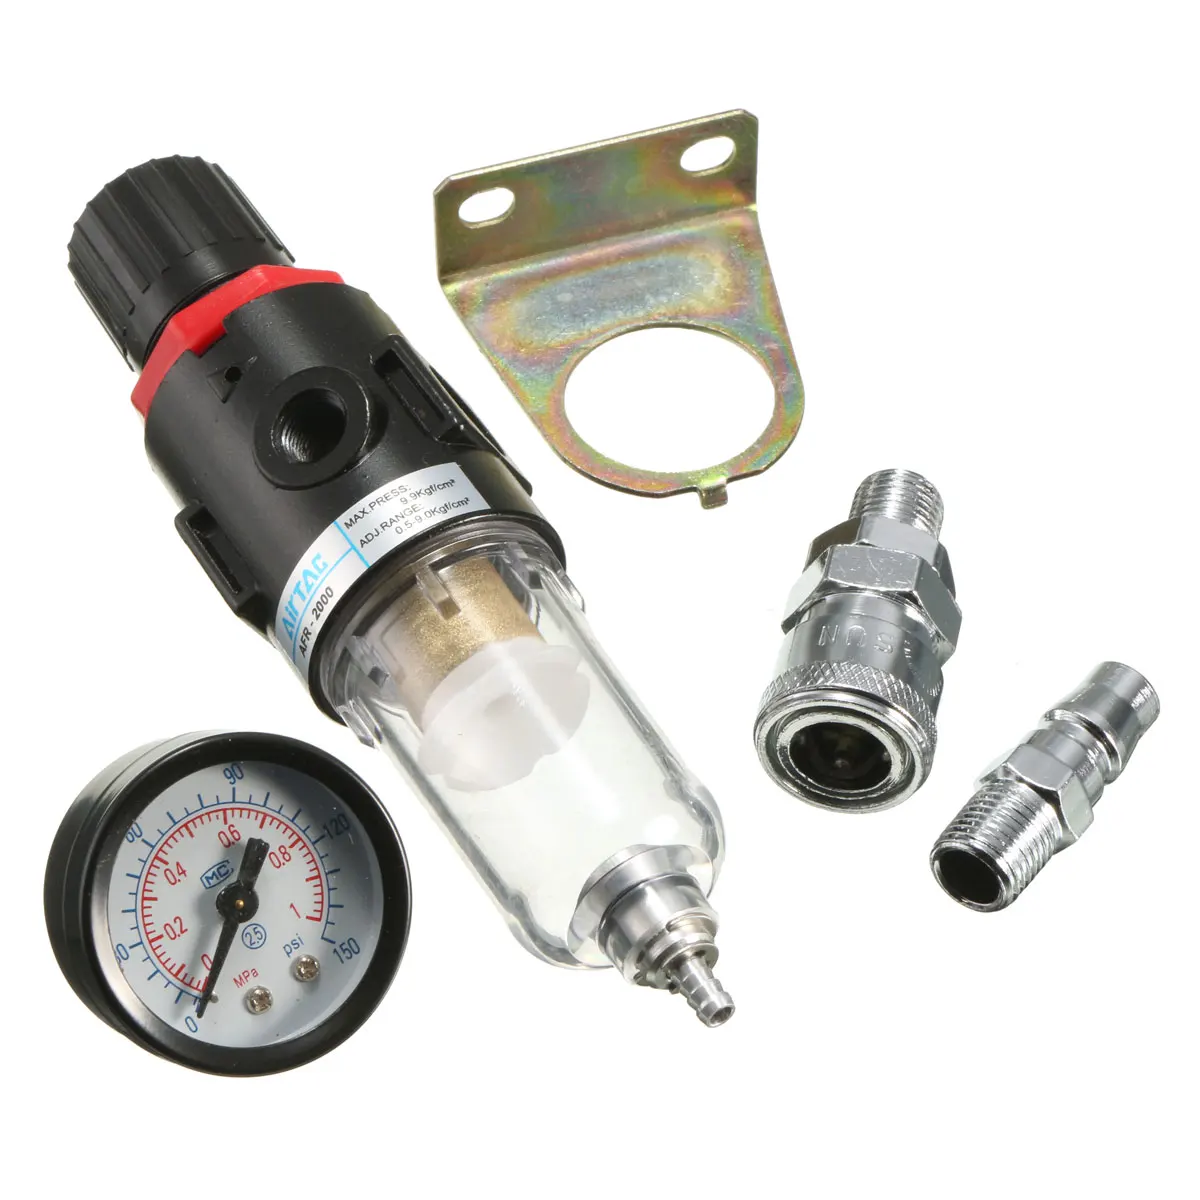 Воздушный компрессор фильтр 1/" 30-120PSI 40 микрон с регулятором манометр светильник фильтр для веса частицы сепаратор воды ловушка набор инструментов